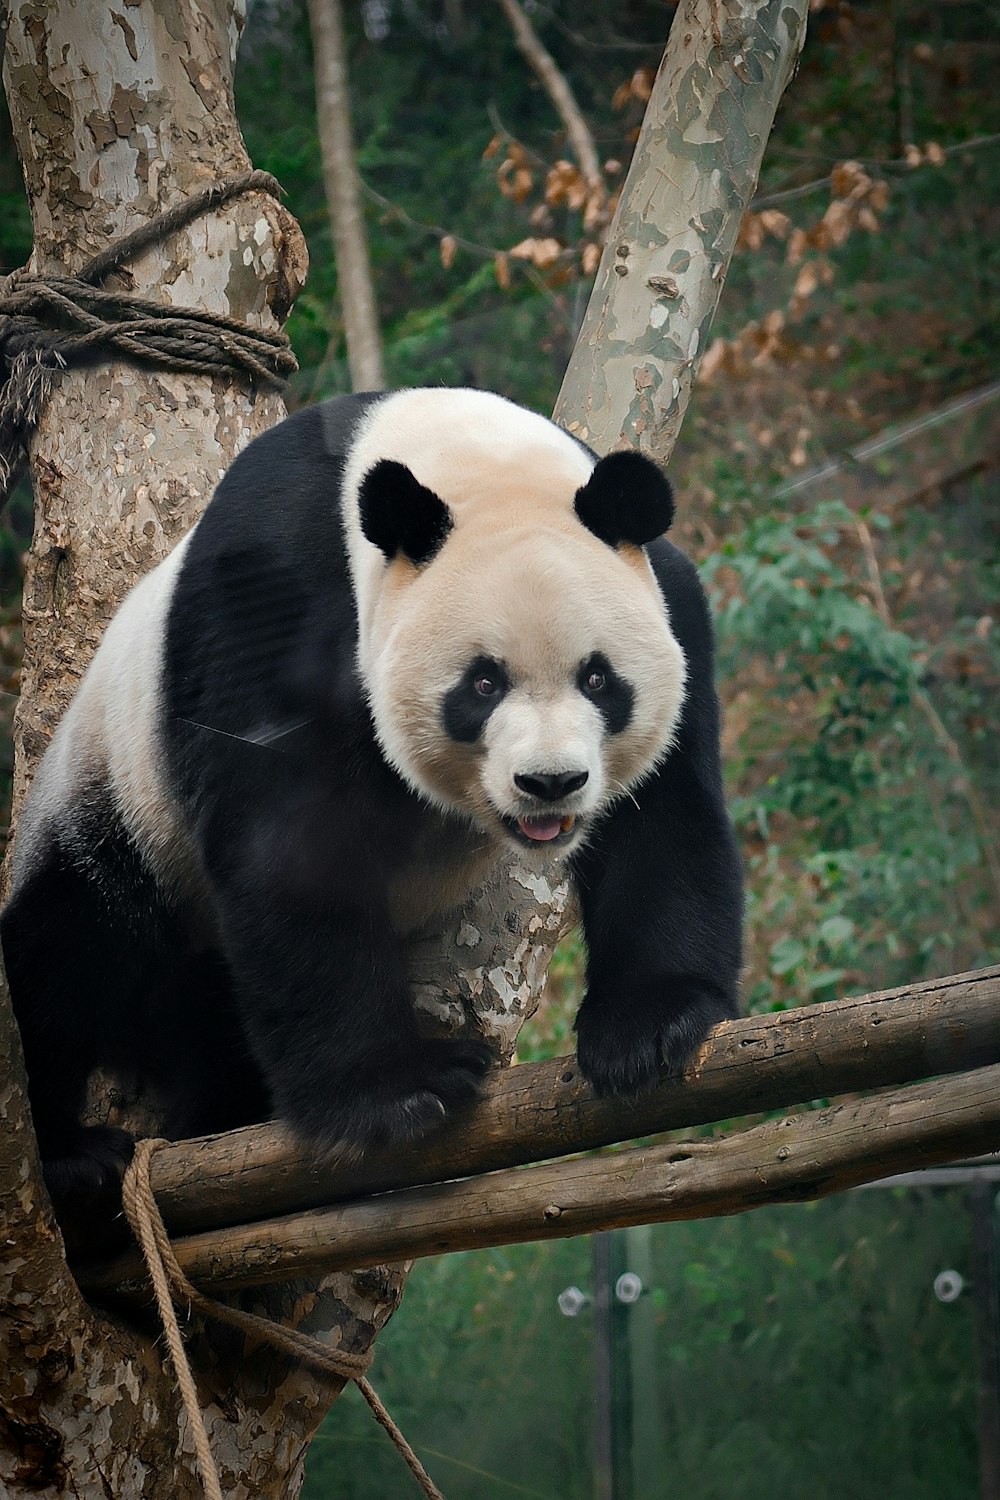 나뭇가지 위에 앉아 있는 팬더 곰